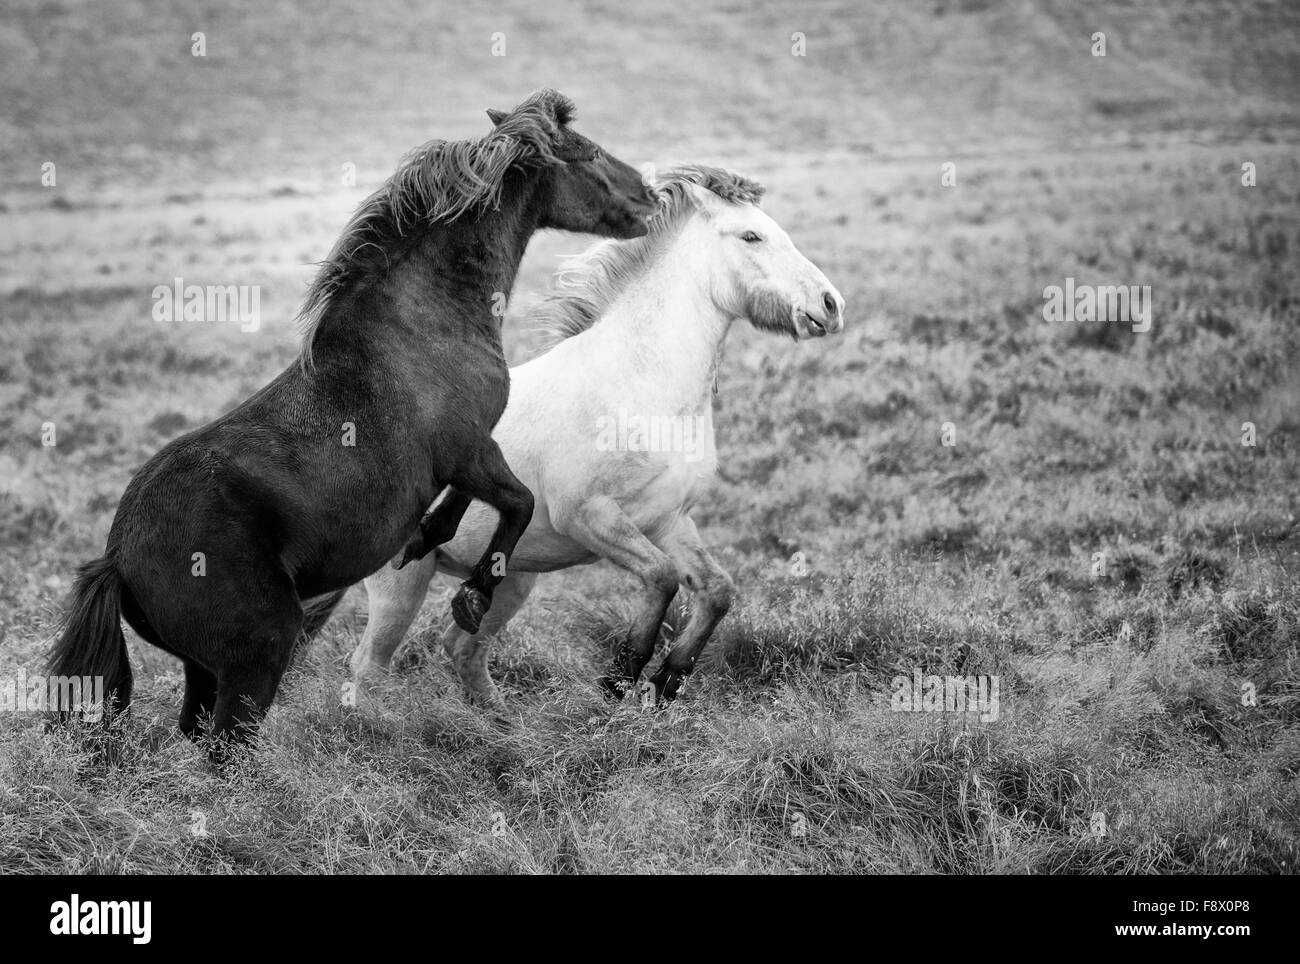 Fuera de Vik. Dos caballos islandeses jugando juntos Foto de stock